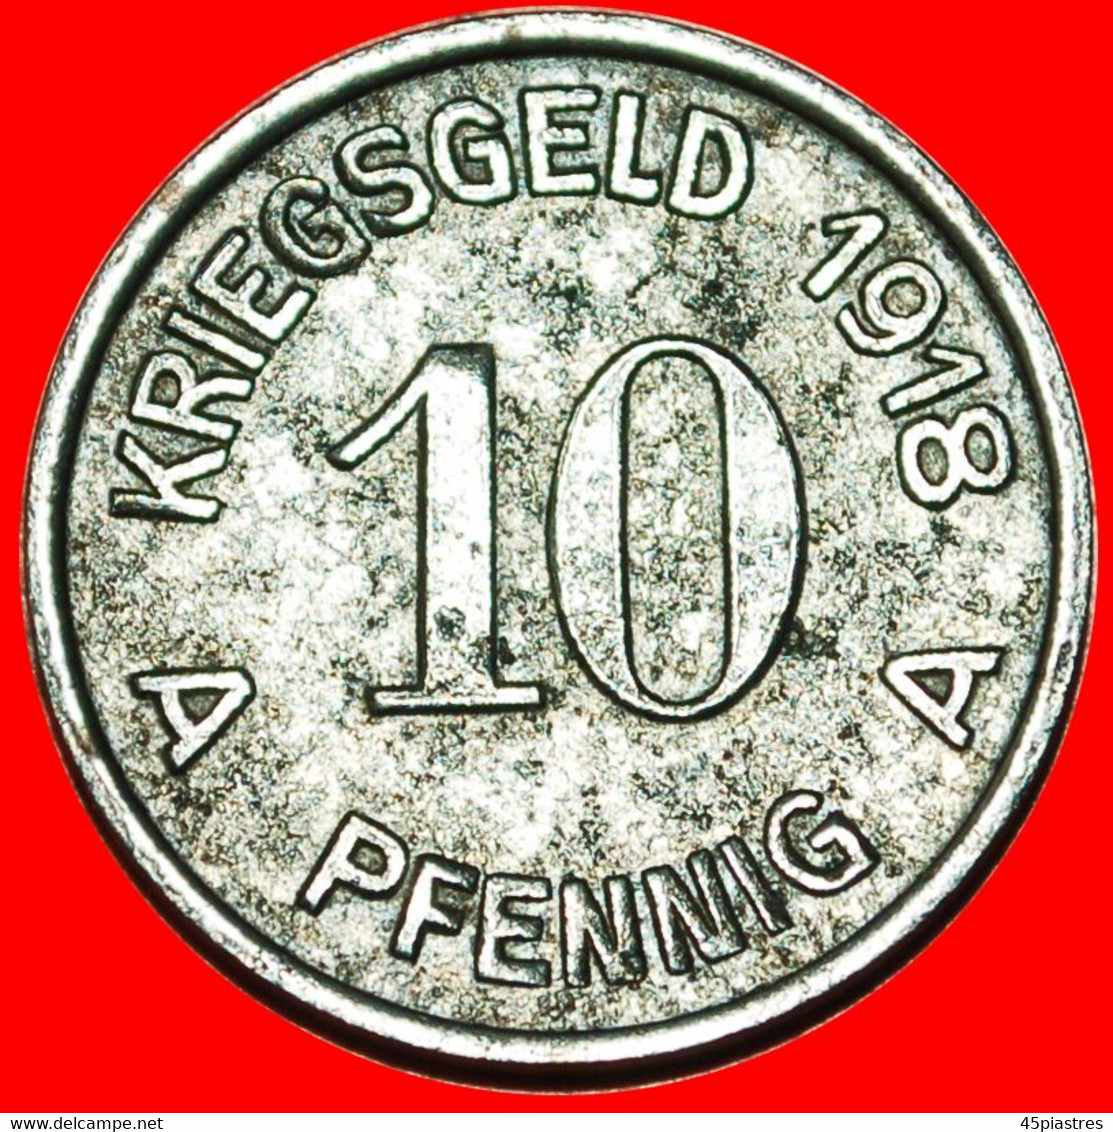 * HAND GRENADE WESTPHALIA: GERMANY LUEDENSCHEID ★ 10 PFENNIGS 1918! TO BE PUBLISHED! LOW START! ★ NO RESERVE! - Notgeld